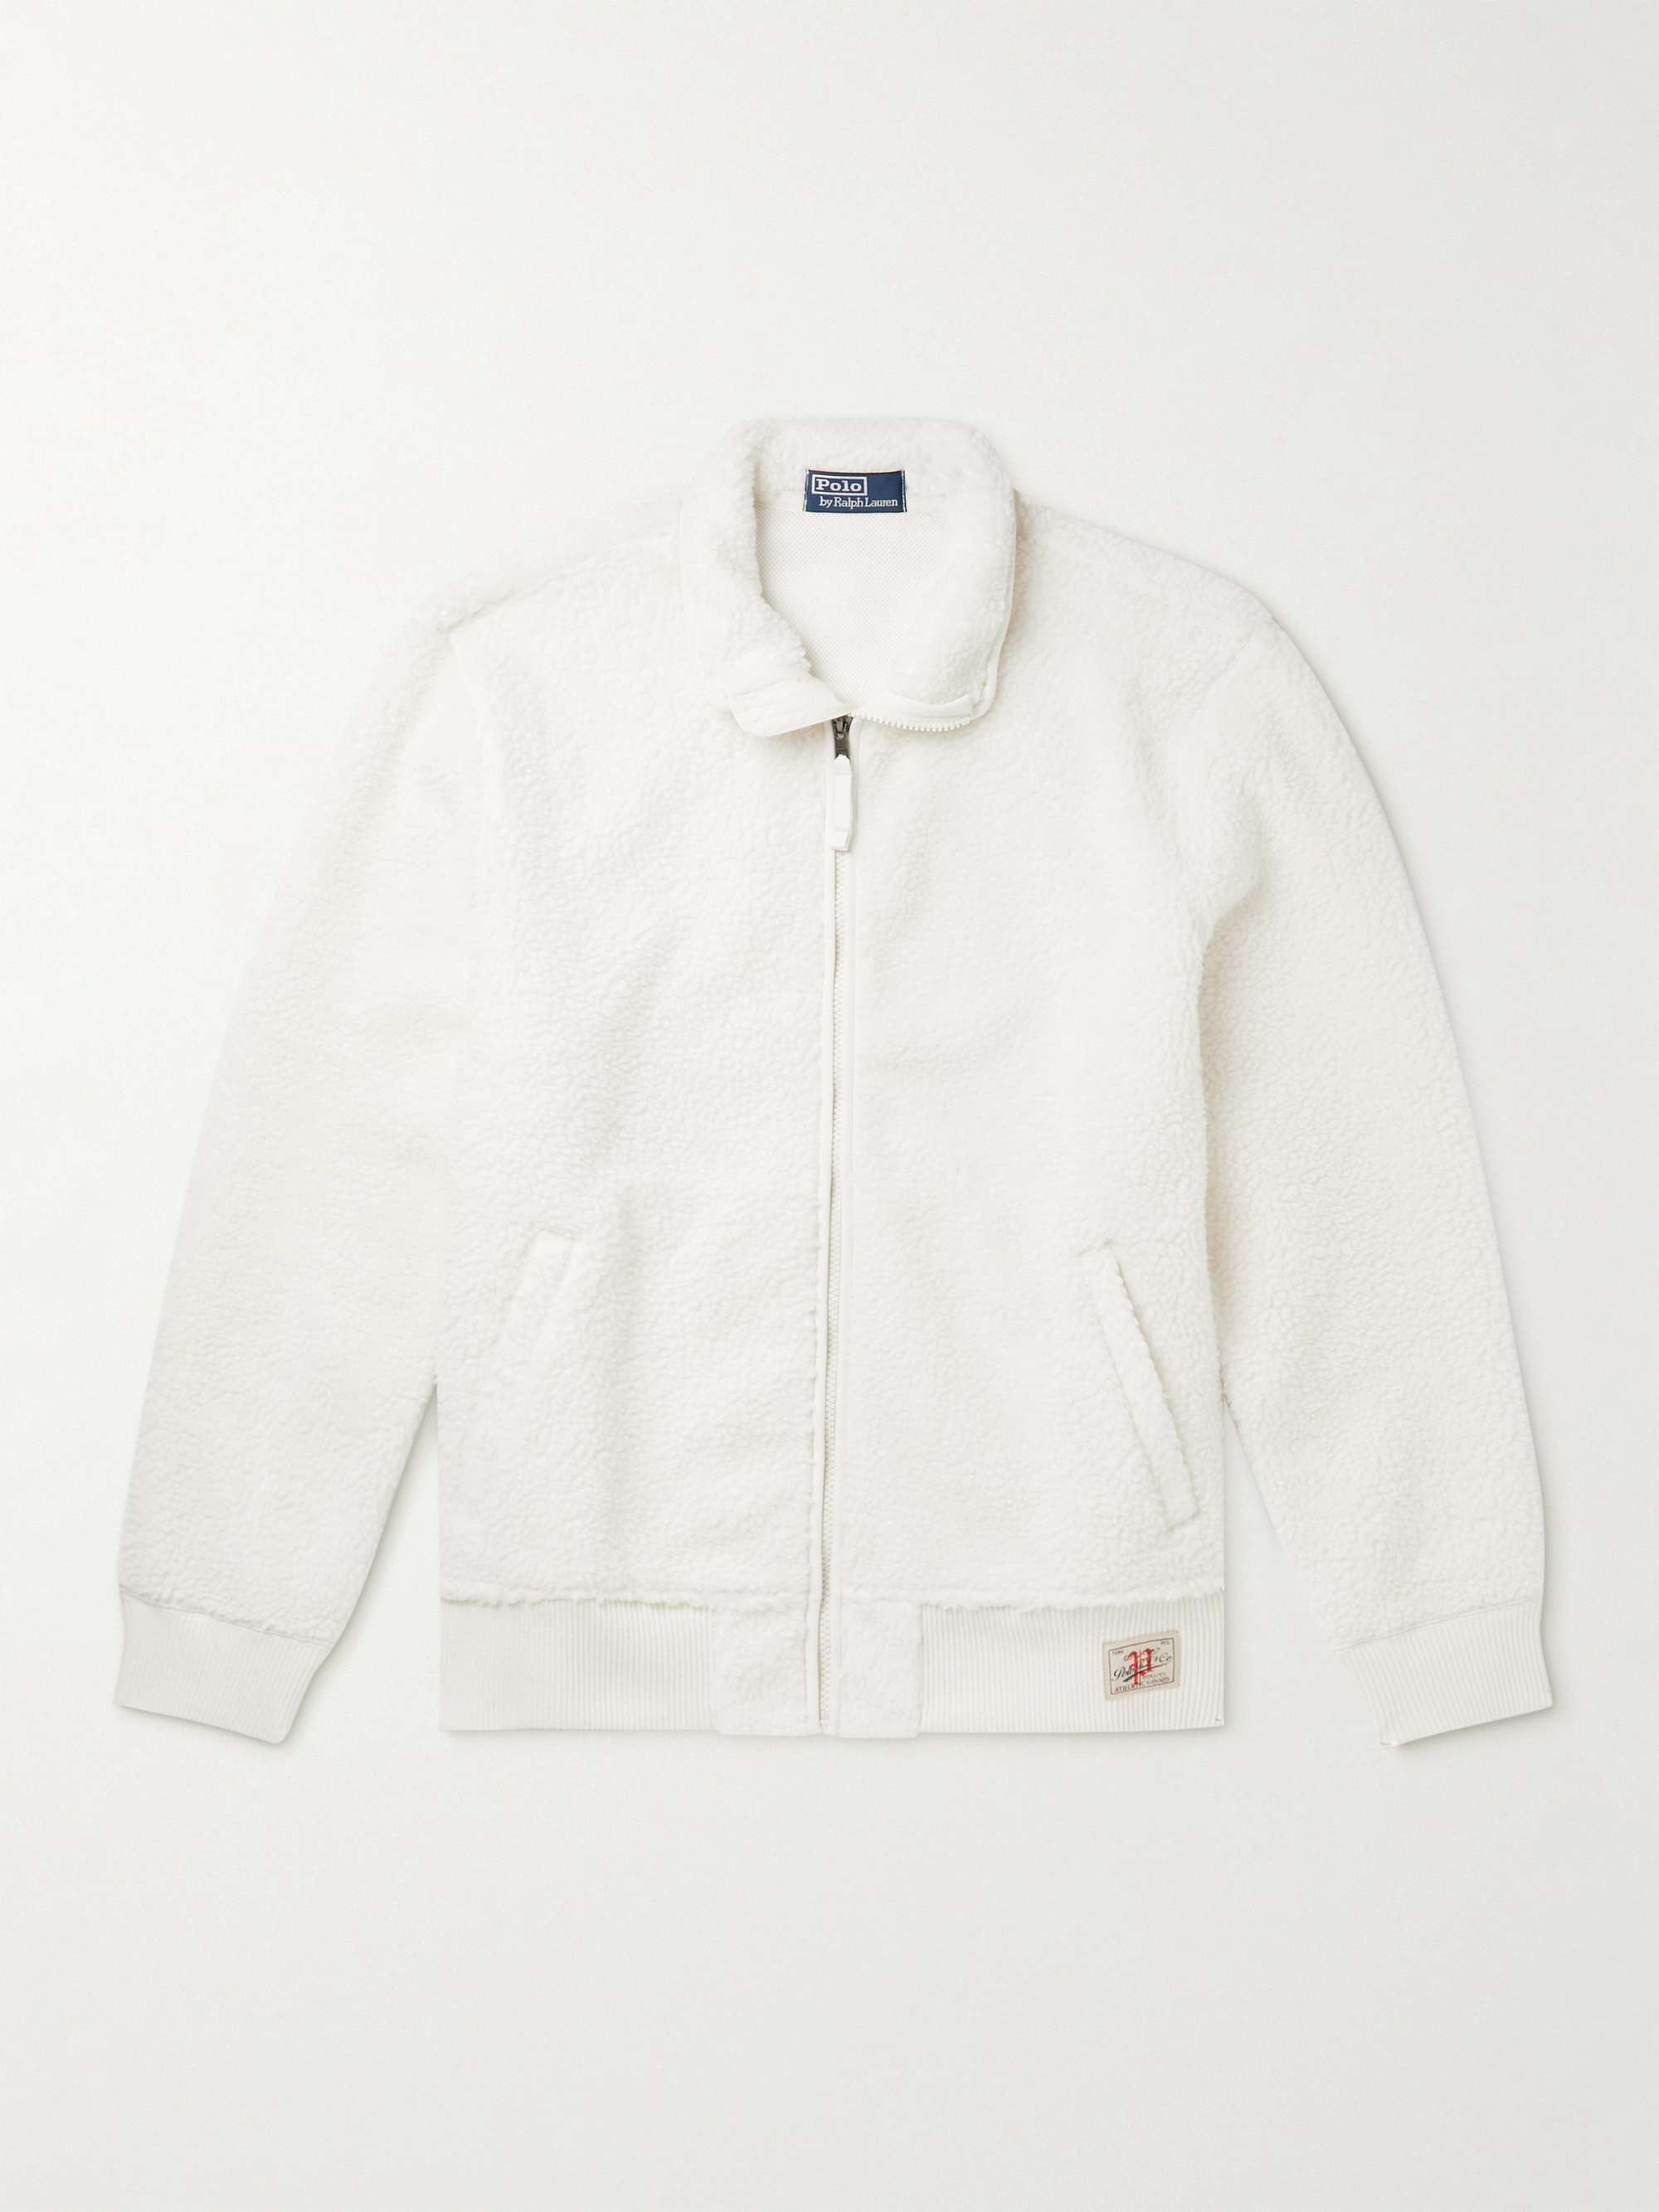 Off-white Fleece Jacket | POLO RALPH LAUREN | MR PORTER